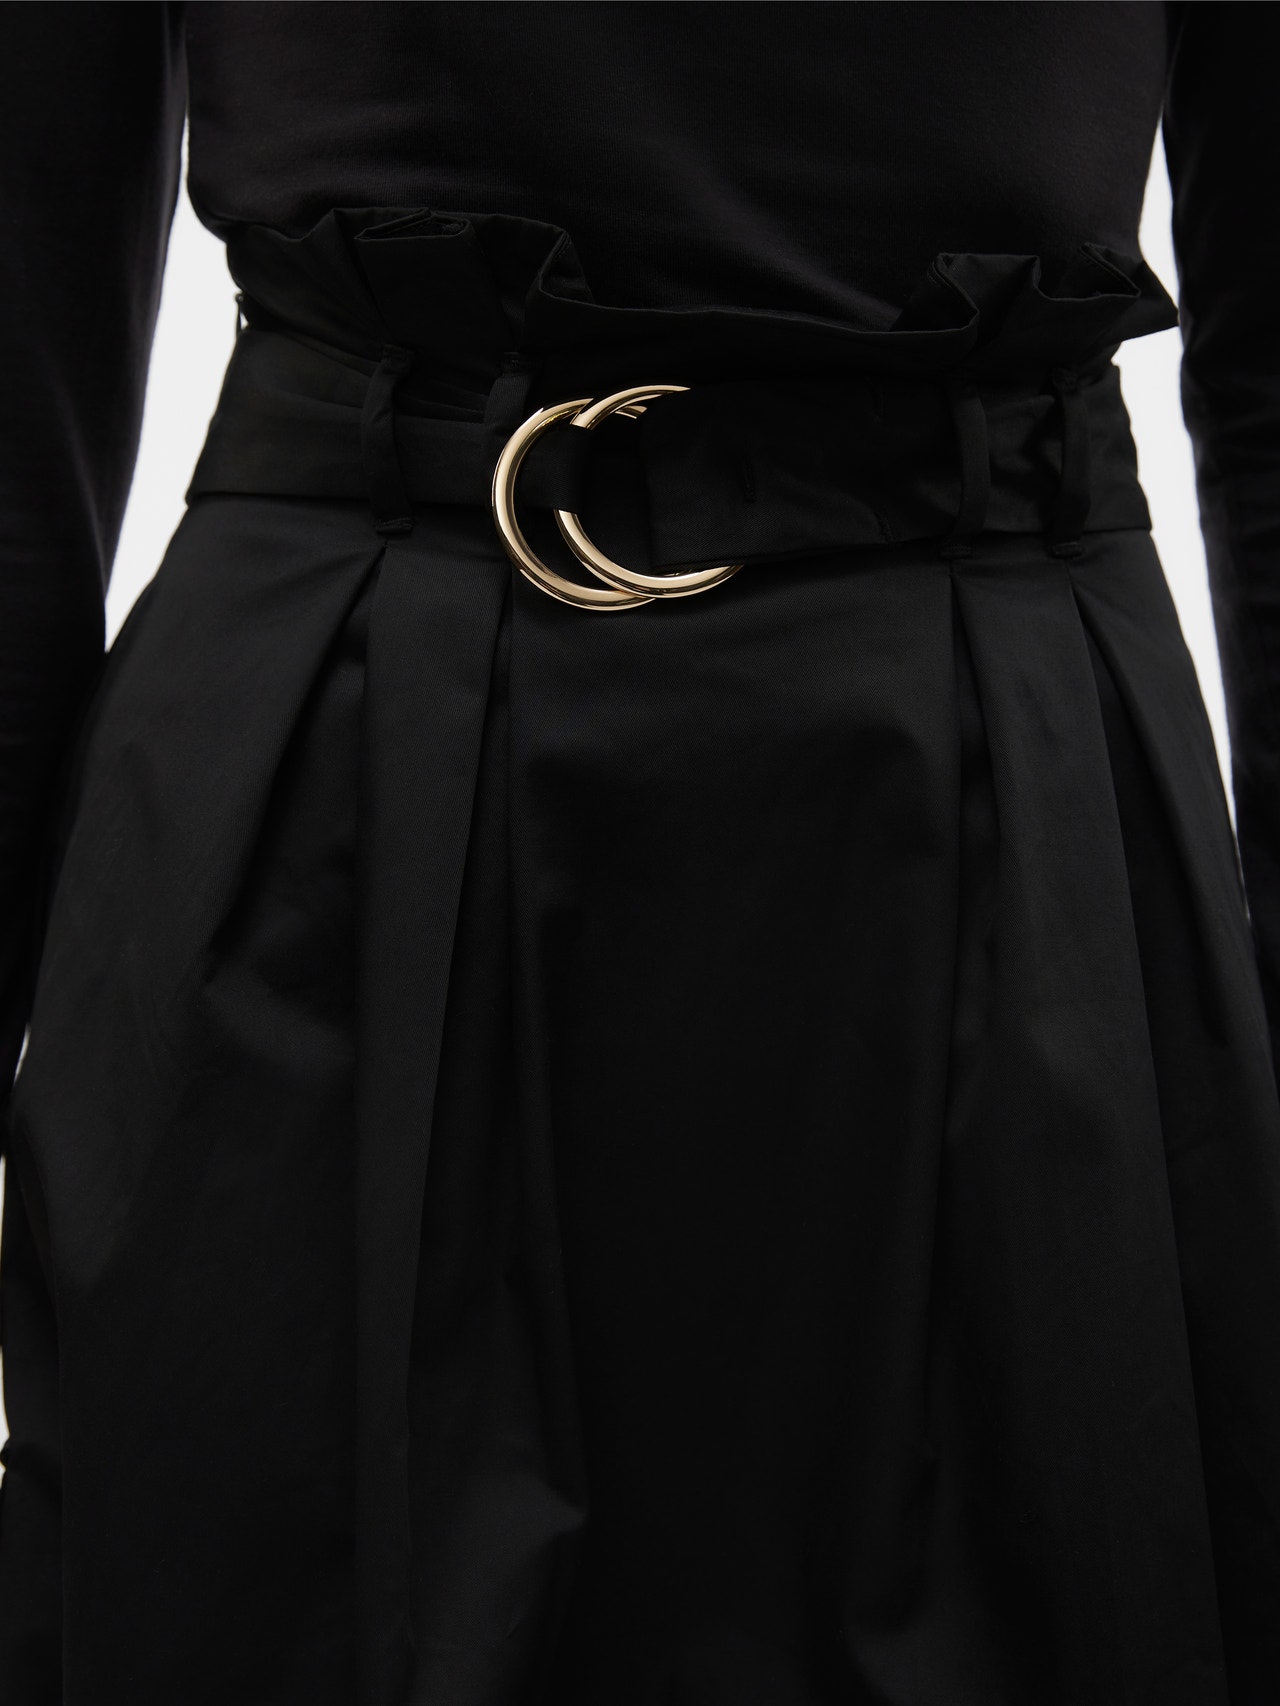 Vero Moda VMHAYA Long Skirt -Black - 10313558